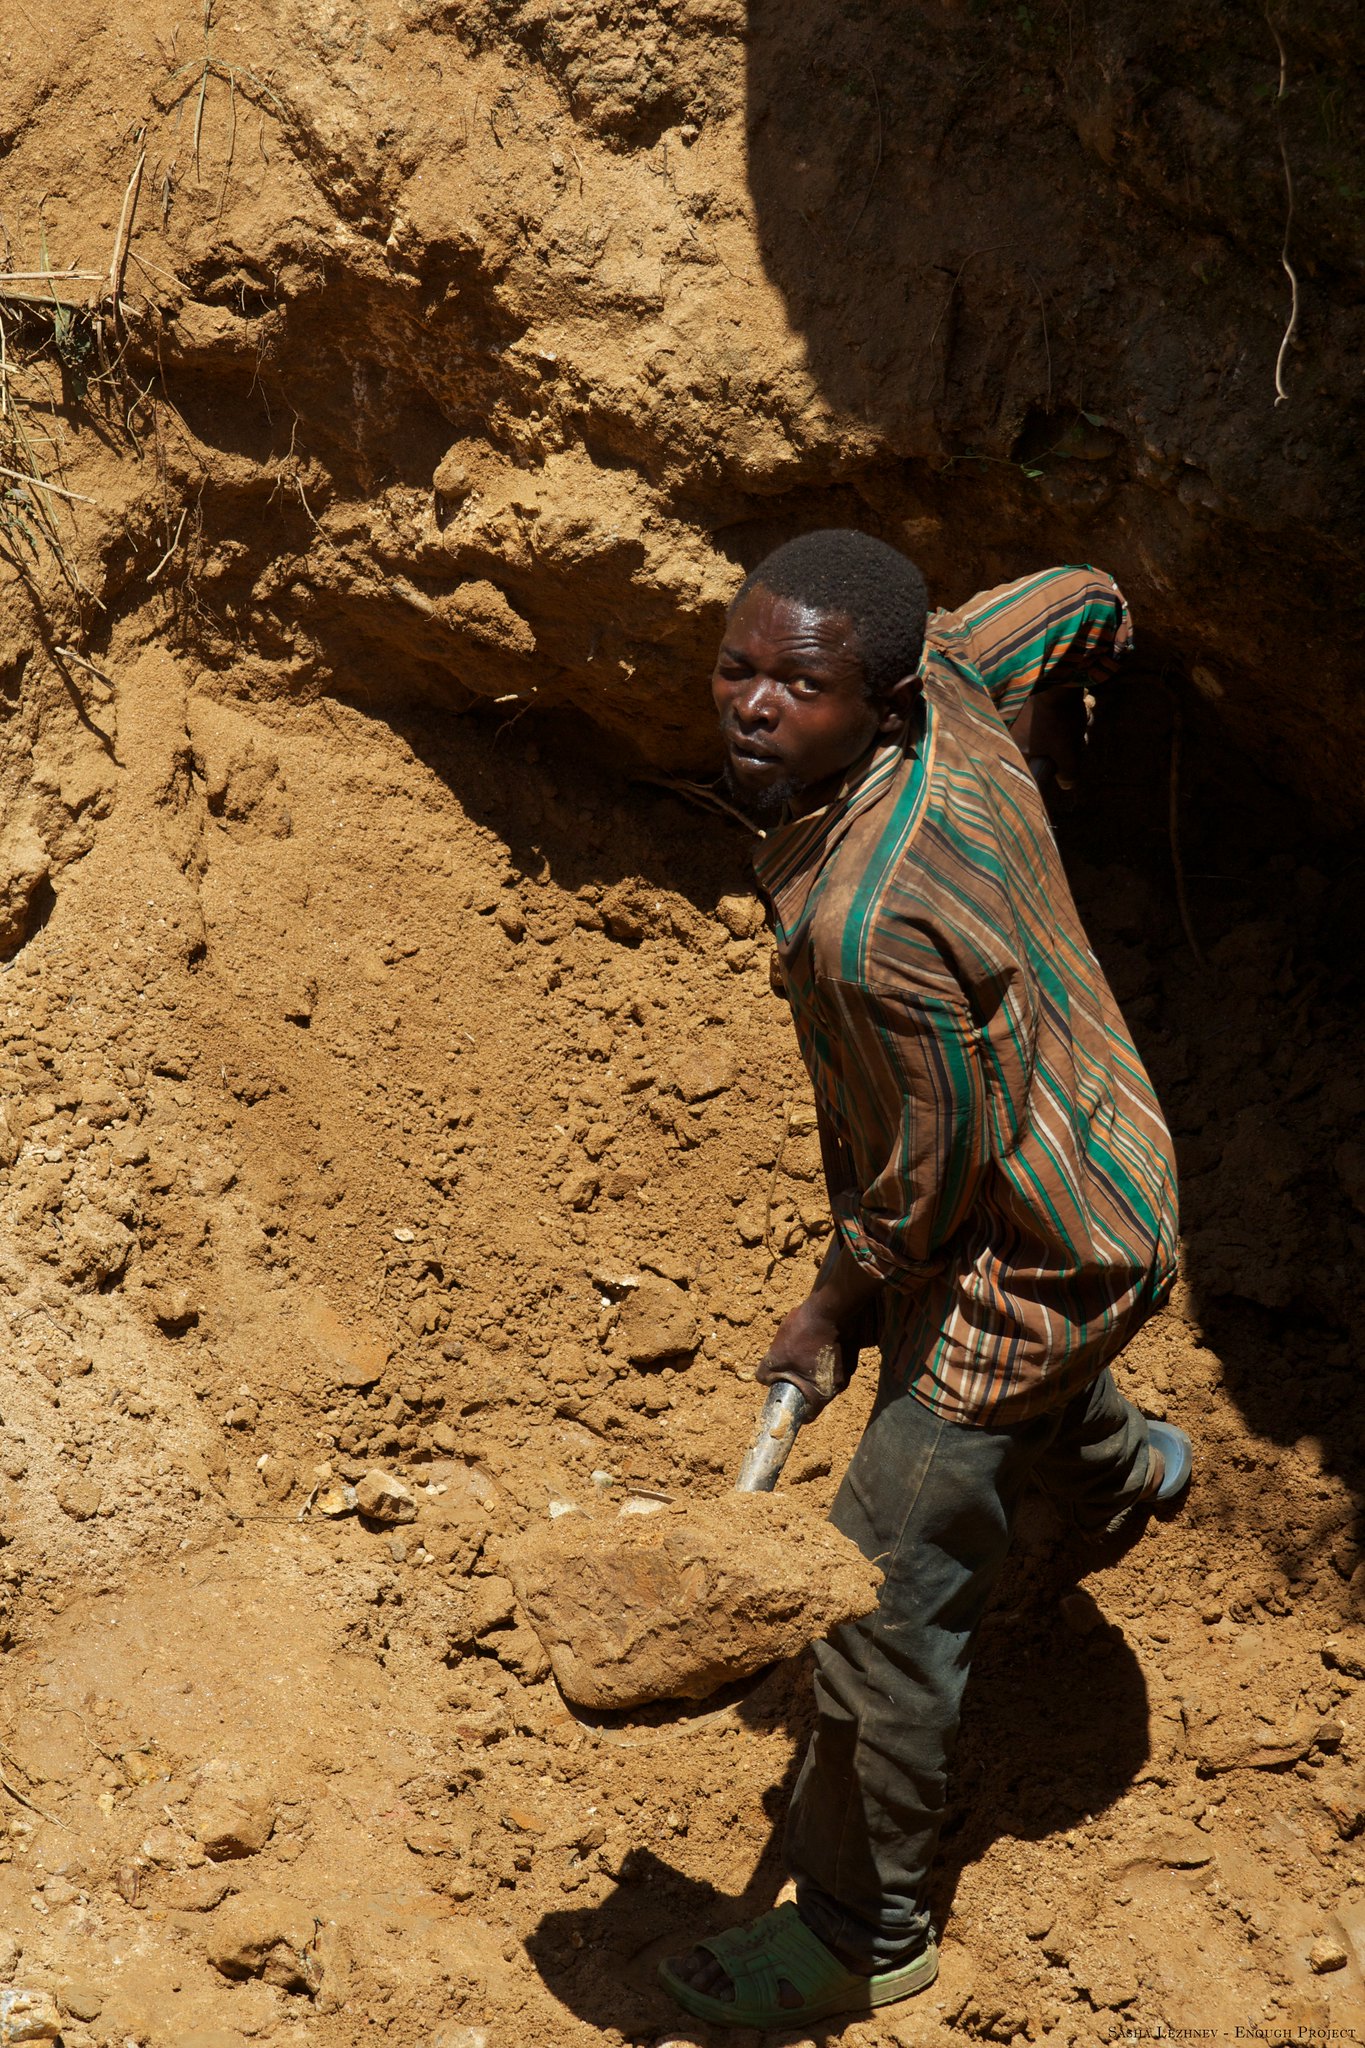 A boy working in a mine in South Kivu